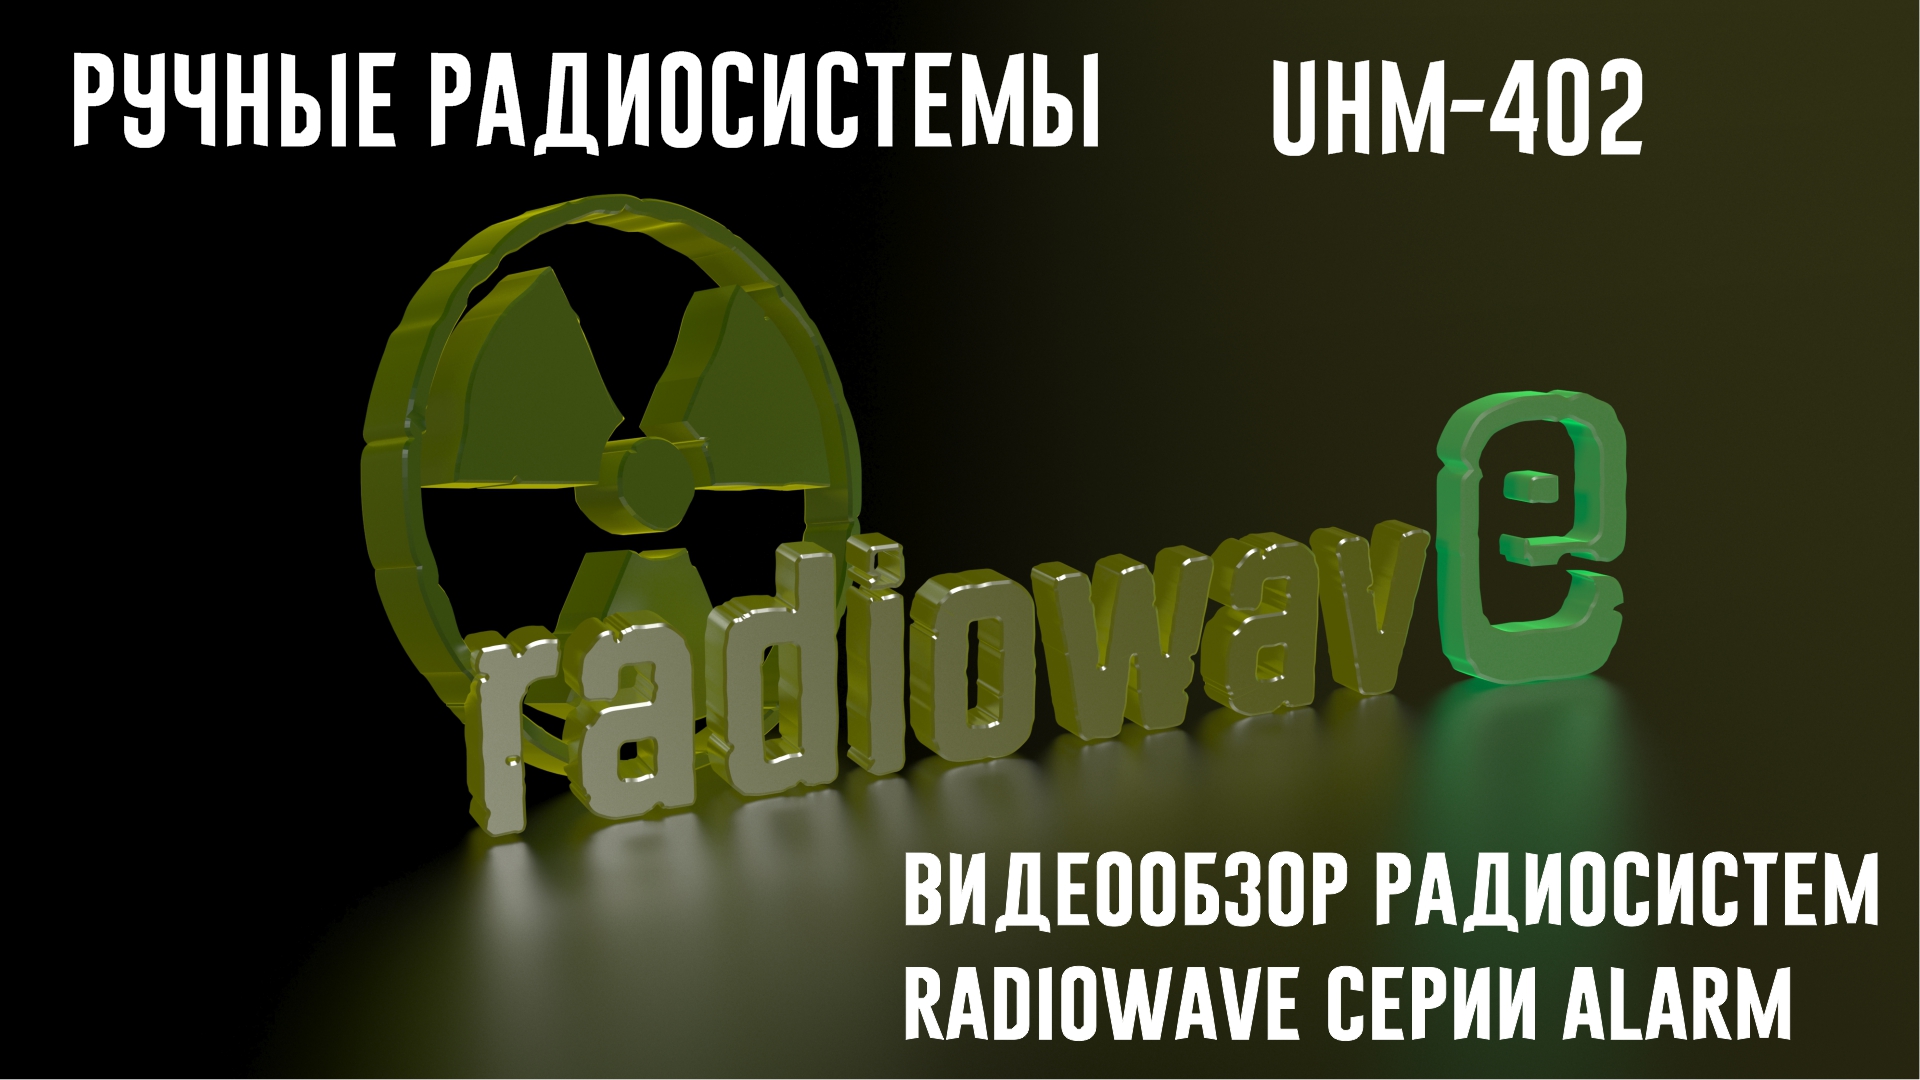 Radiowave UHM-402 Ручные Радиосистемы